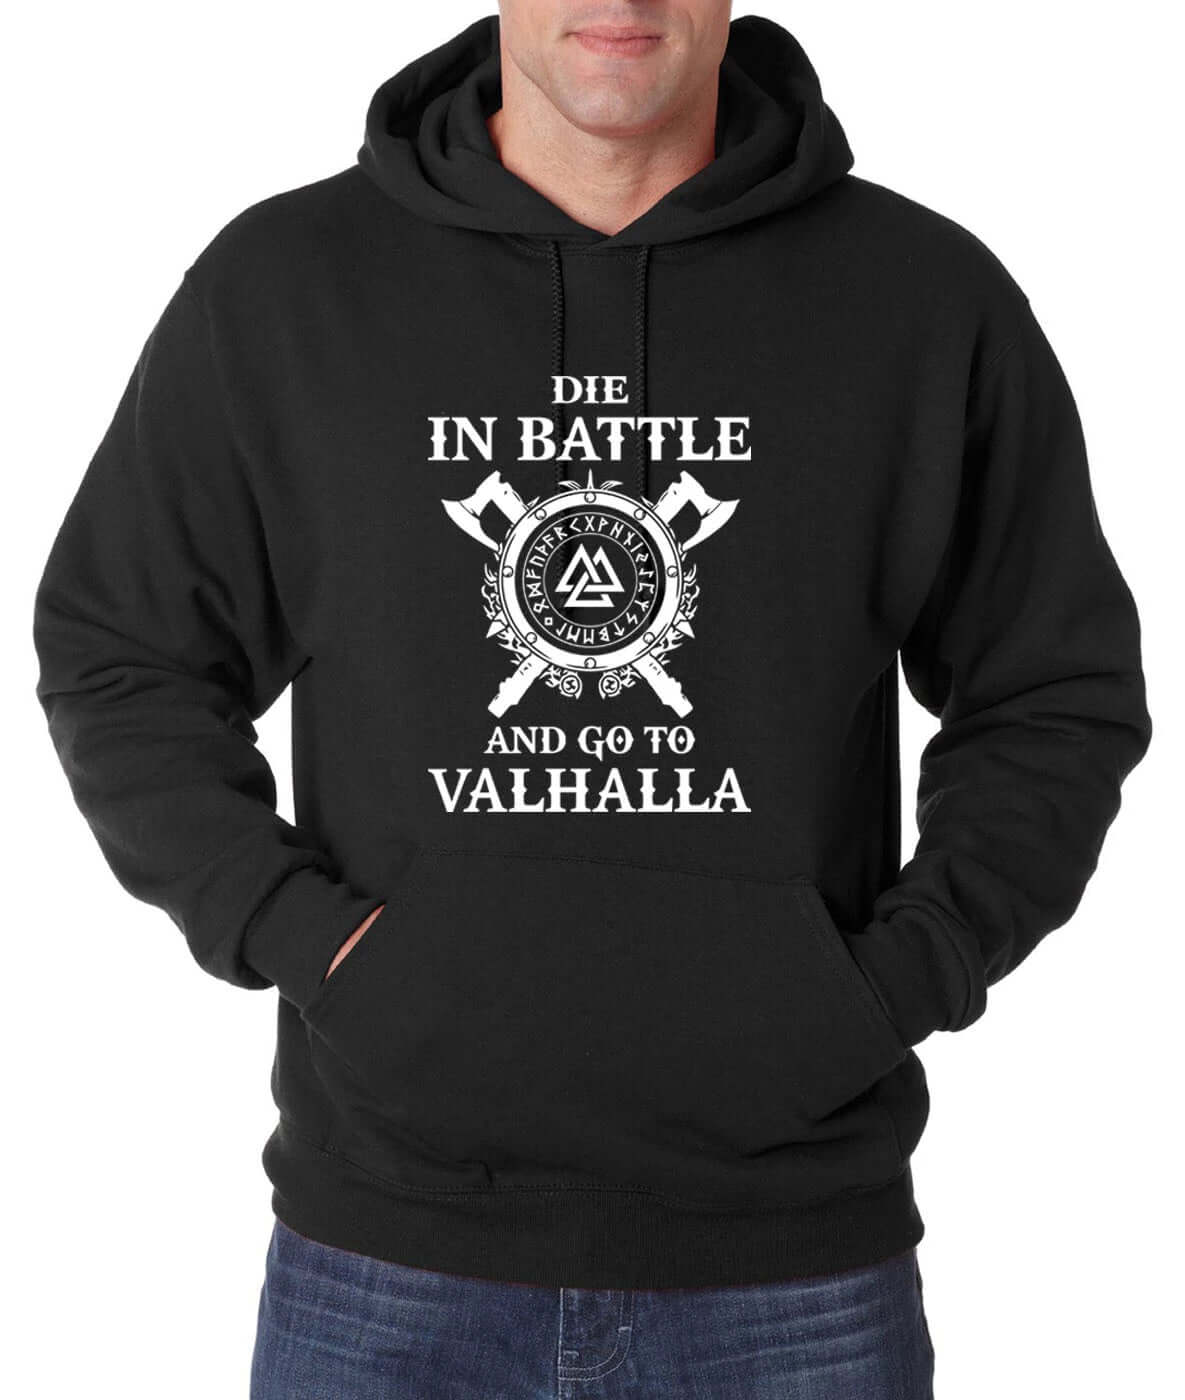 Go to Valhalla (Viking Hoodie)